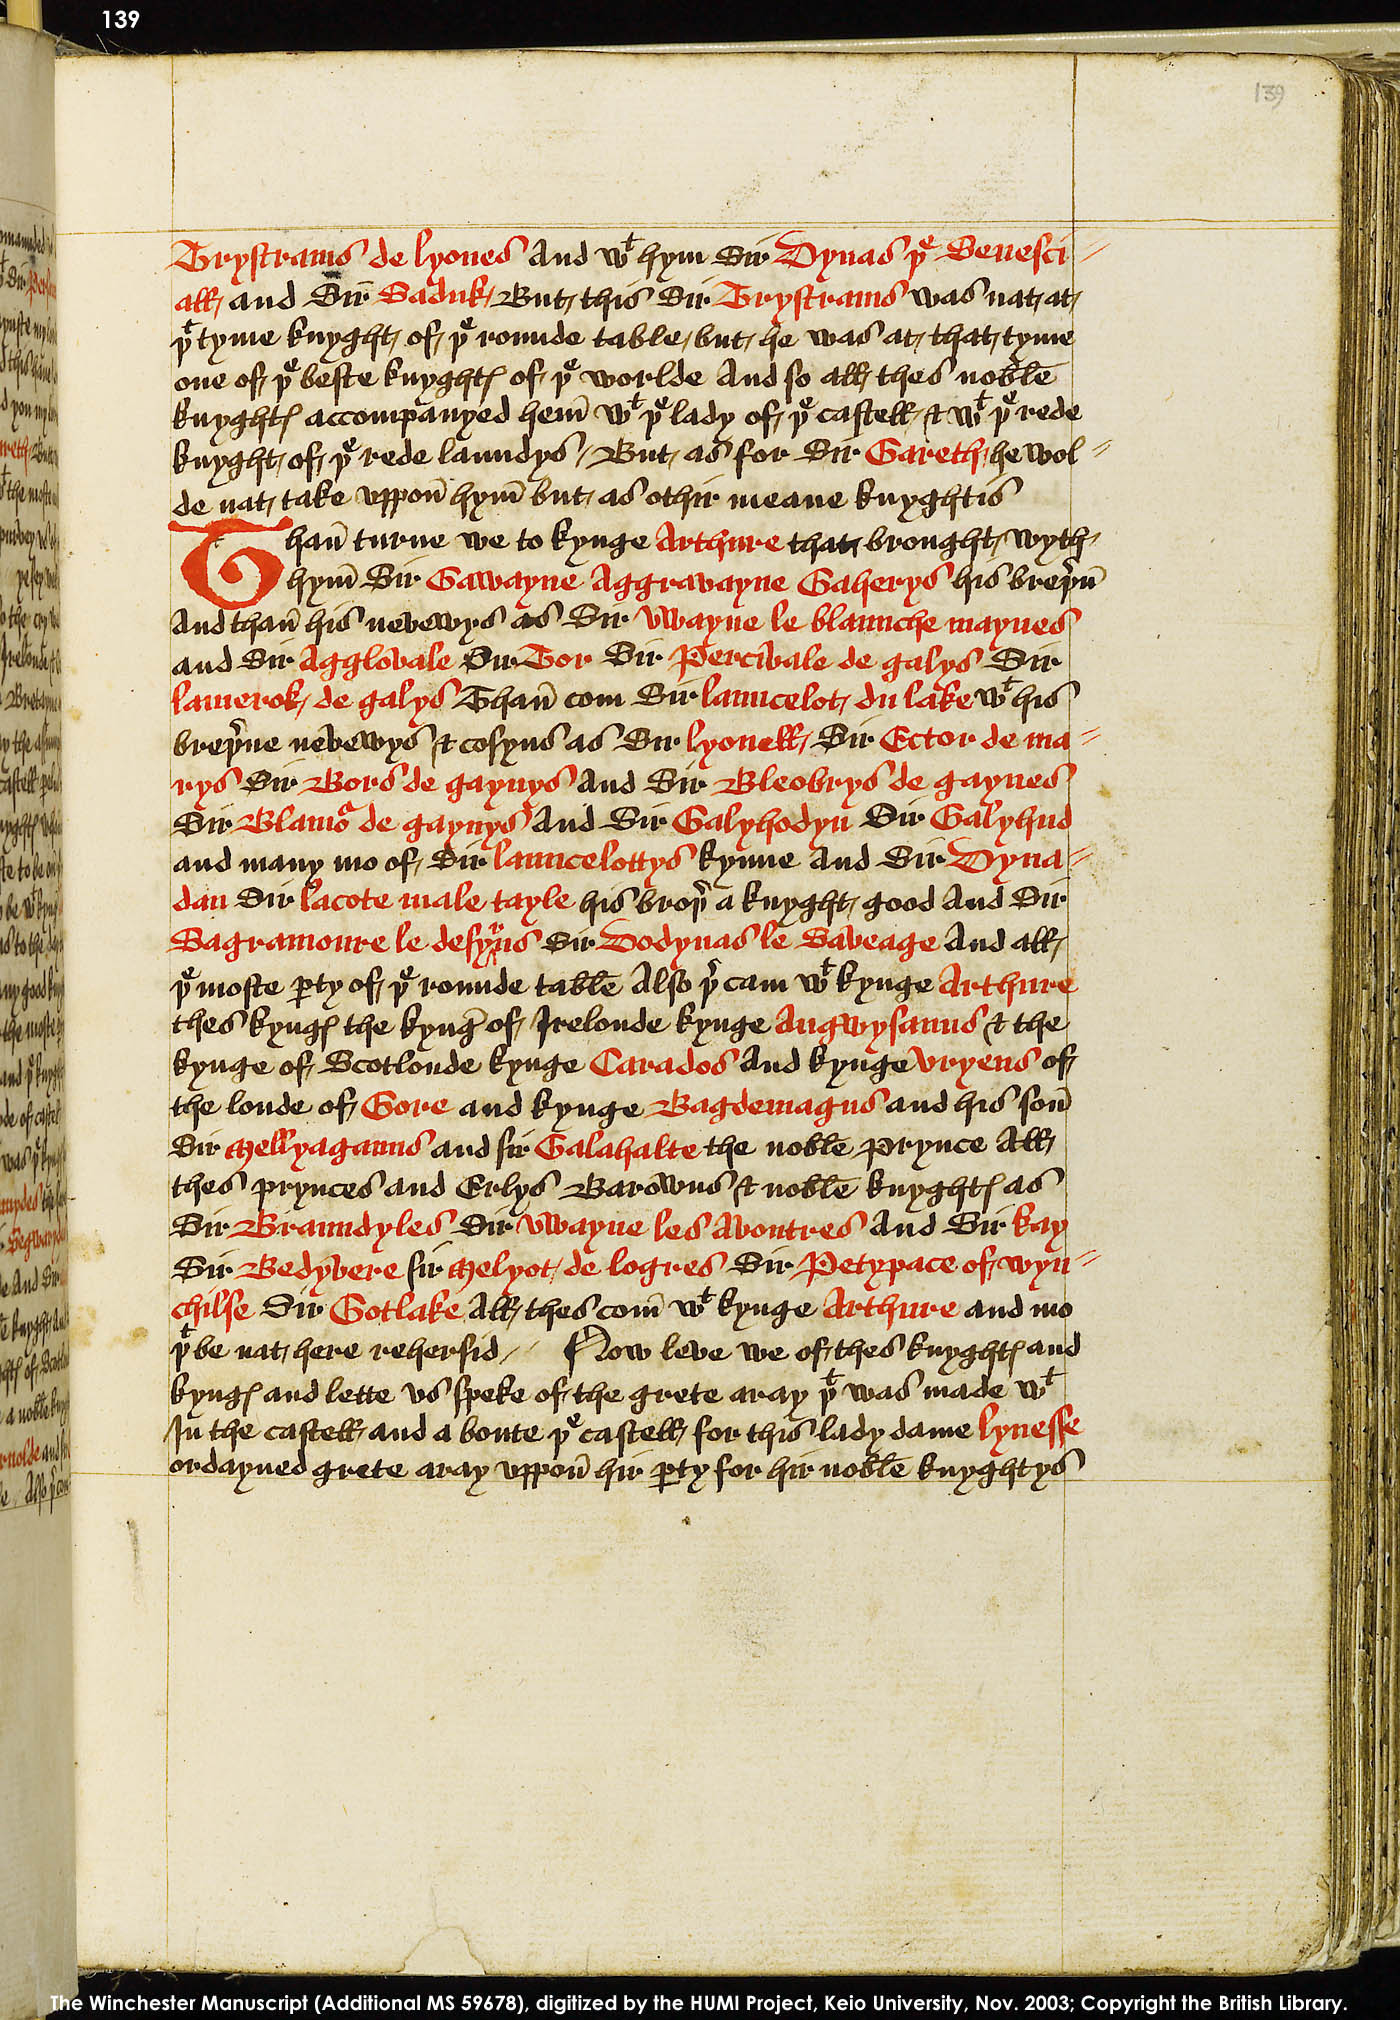 Folio 139r